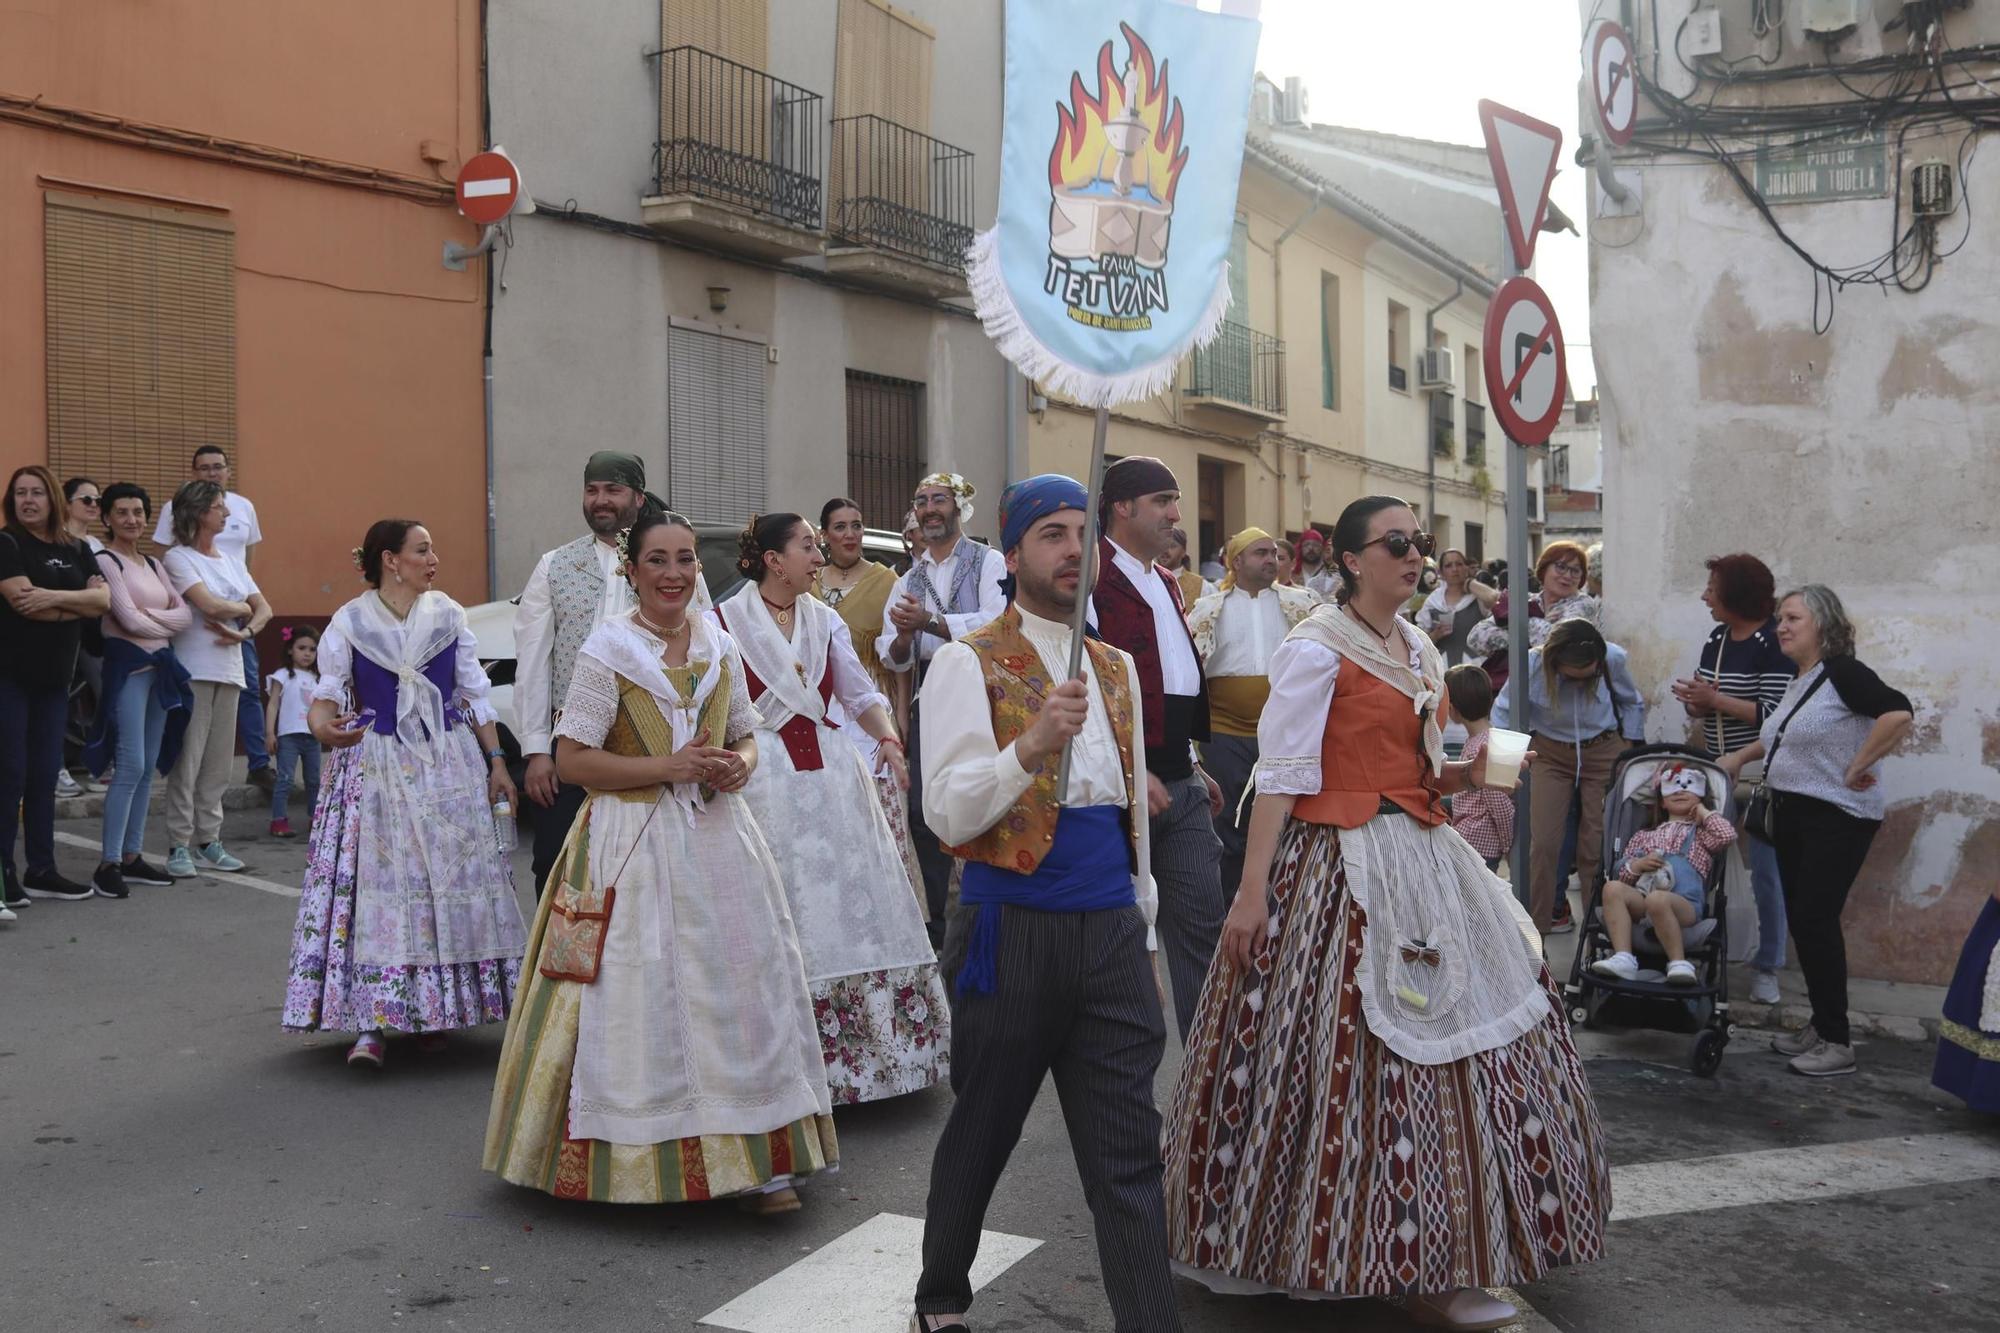 La tradicional visita a las fallas de Xàtiva en imágenes